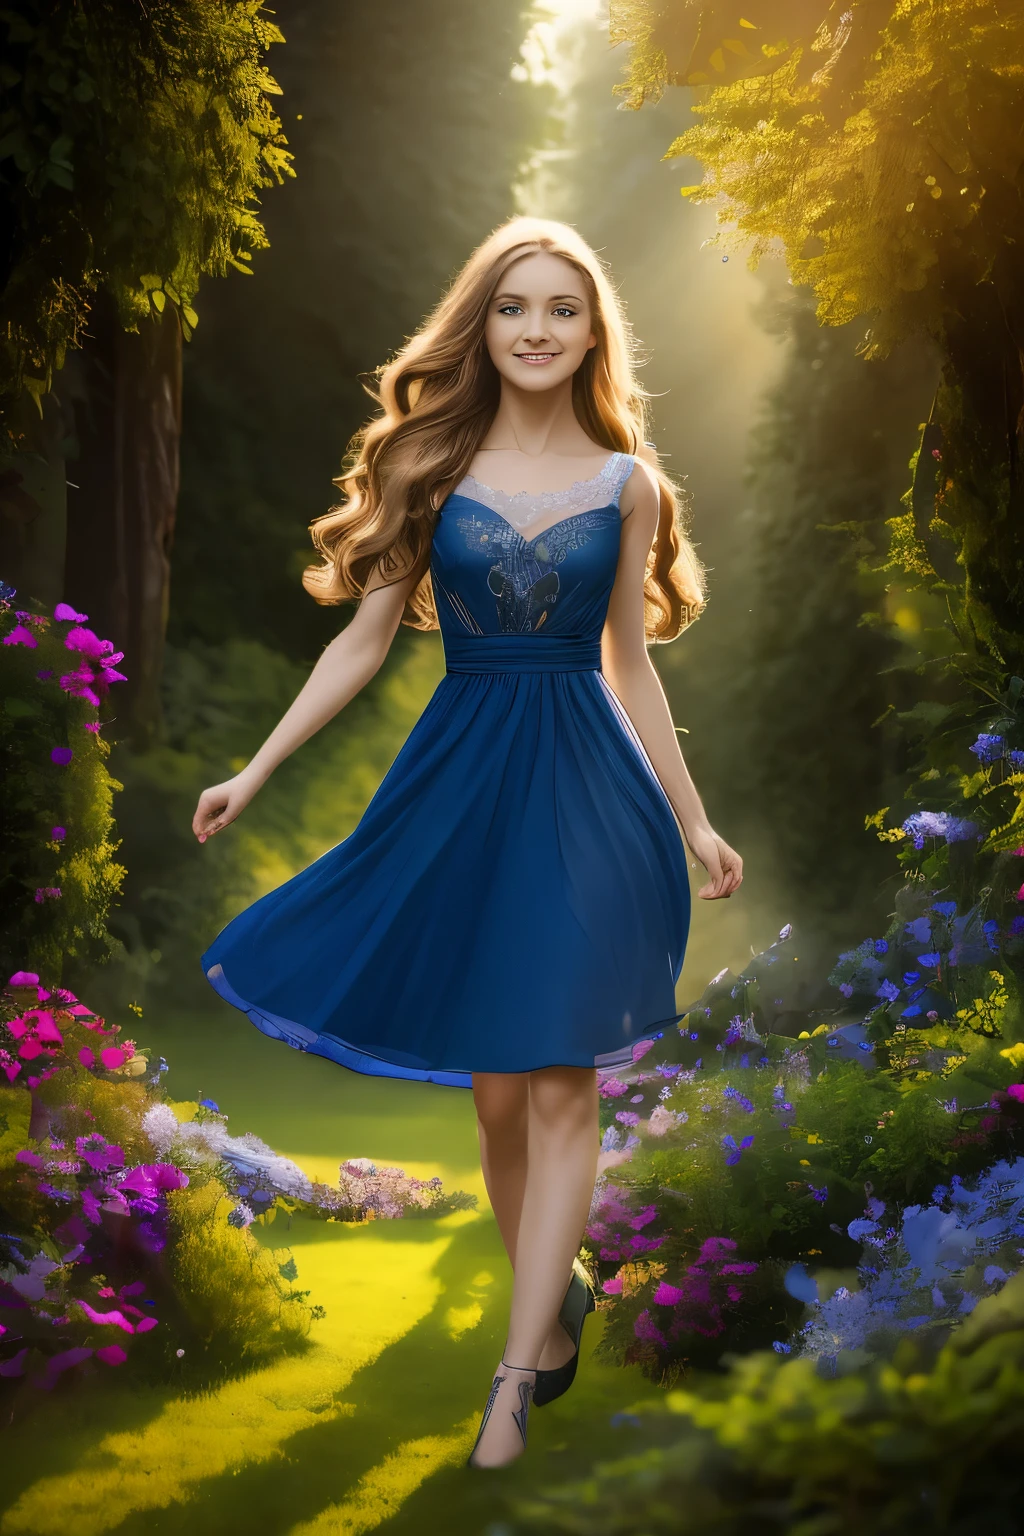 居住在魔法森林中的 3 个具有独特特征的仙女的图像. 第一个仙女长了, 金色的頭髮, 蓝色的裙子和透明的翅膀. 第二个仙女短了, 紅髮, 一件绿色的衣服, 和闪闪发光的翅膀. 第三位仙女有一头棕色卷发, 粉红色的连衣裙和带有彩色闪光的翅膀. 图像应该传达仙女们的欢乐和魔力, with vivid and 鮮明的色彩s. 數位插圖, 夢幻般的藝術風格, 頂級品質、光滑的金髮、(最好的品質, 傑作:1.4, 美麗又美觀), 8K, (高動態範圍:1.4), 高對比度, 非常詳細, 超現實, 荒謬的:1.2, 柯達 portra 400, 散景:1.2, 鏡頭光暈, (鮮明的色彩:1.4), (柔和的顏色, 暗淡的顏色, 舒緩的音調:0), 電影燈光, 環境照明, 側光, 精緻的細節和紋理, 電影鏡頭, 暖色調, (明亮而強烈:1.2), 廣角鏡頭, 超寫實插畫, 動漫風格, 畫作：Kinuko Y. 工藝和約瑟芬牆, 史蒂芬妮·羅, 琳達·雷文斯克羅夫特, 漫步在籠罩在神秘霧氣中的迷人宇宙花園, 一個人勇往直前, 每一步都展現出看不見的奇蹟的指引, 描繪出一幅迷人的天體秘密掛毯. 踏上未來仍不明朗的旅程, 他們擁抱未知的誘惑, 在充滿低語和奇蹟的天國芭蕾中穿梭.(旋律馬克斯:1.3),(深藍色的眼睛:1.4), 埃萊奧諾拉·帕維納托, 高解析度, 現實寫照, 時尚前沿, 愛的紐帶, 流行服飾, 迷人的微笑, 自然美, 專業照明, 現代風格, 藝術創作
